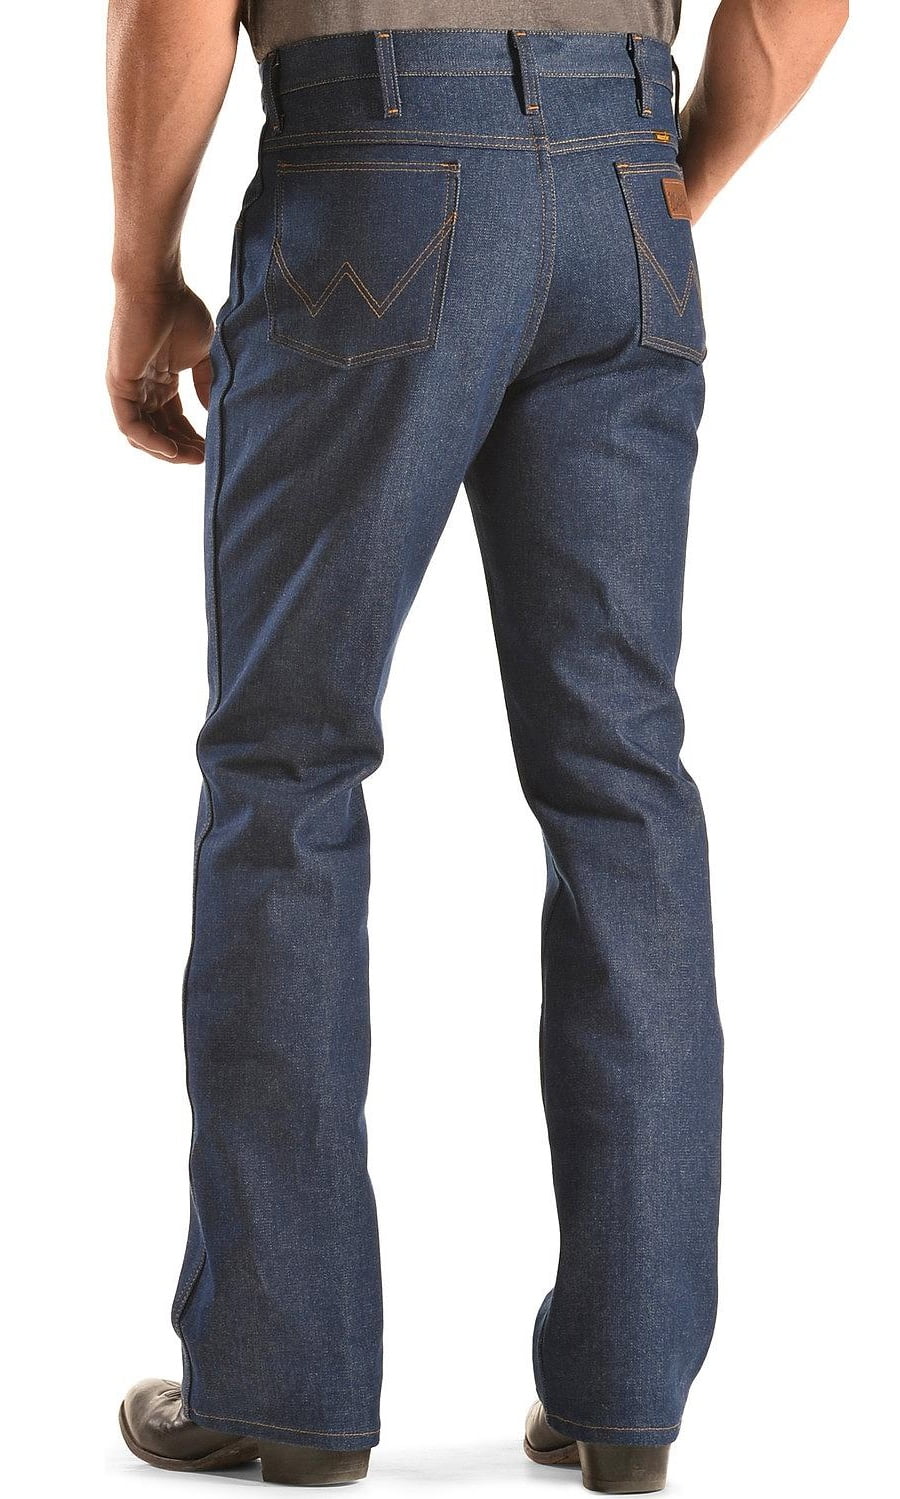 wrangler men's jeans boot cut